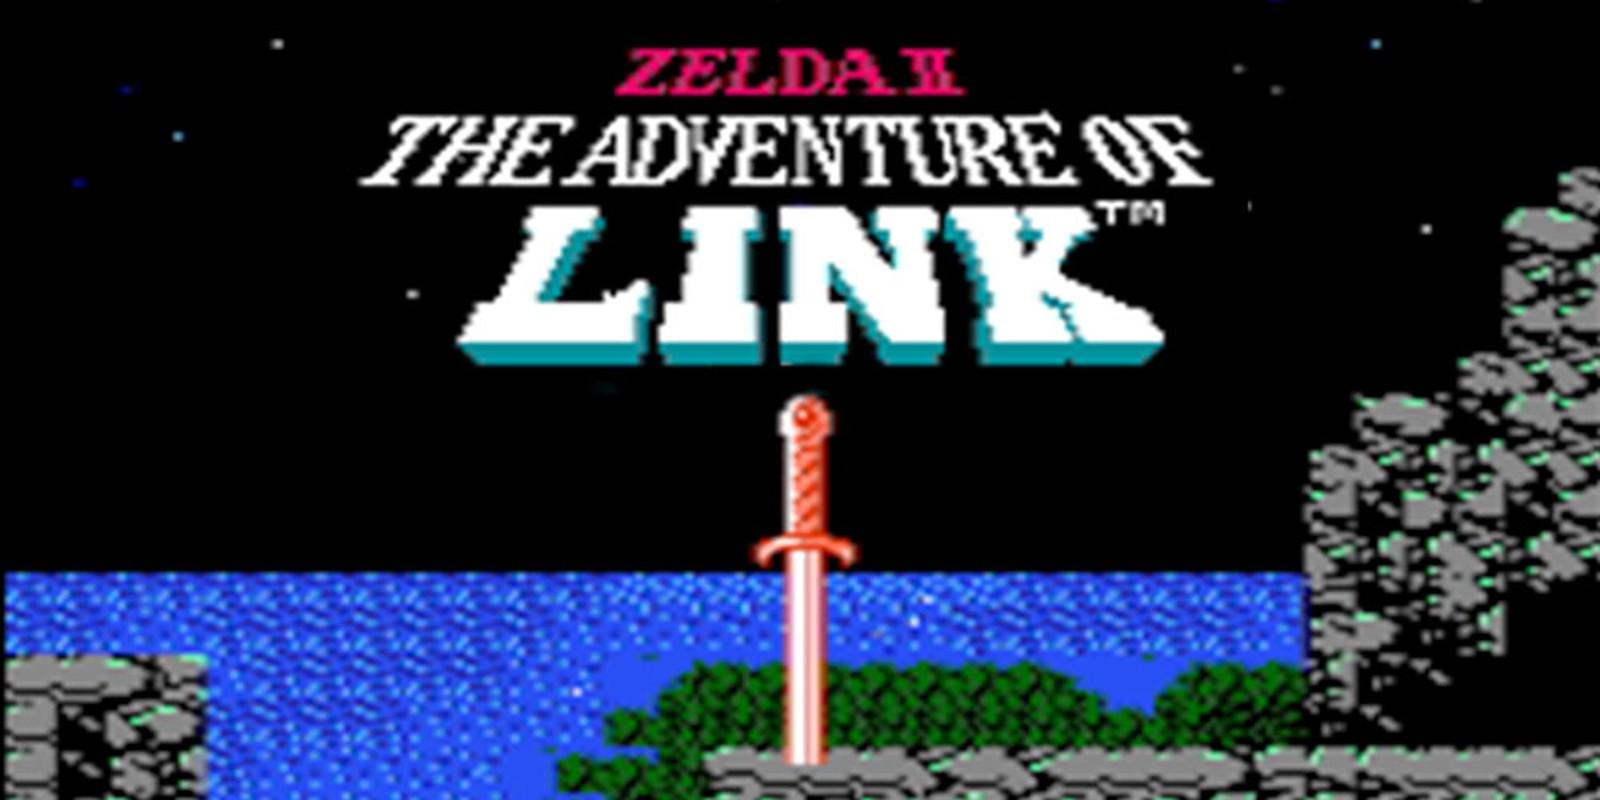 Zelda II: The Adventure of Link | NES | Games | Nintendo